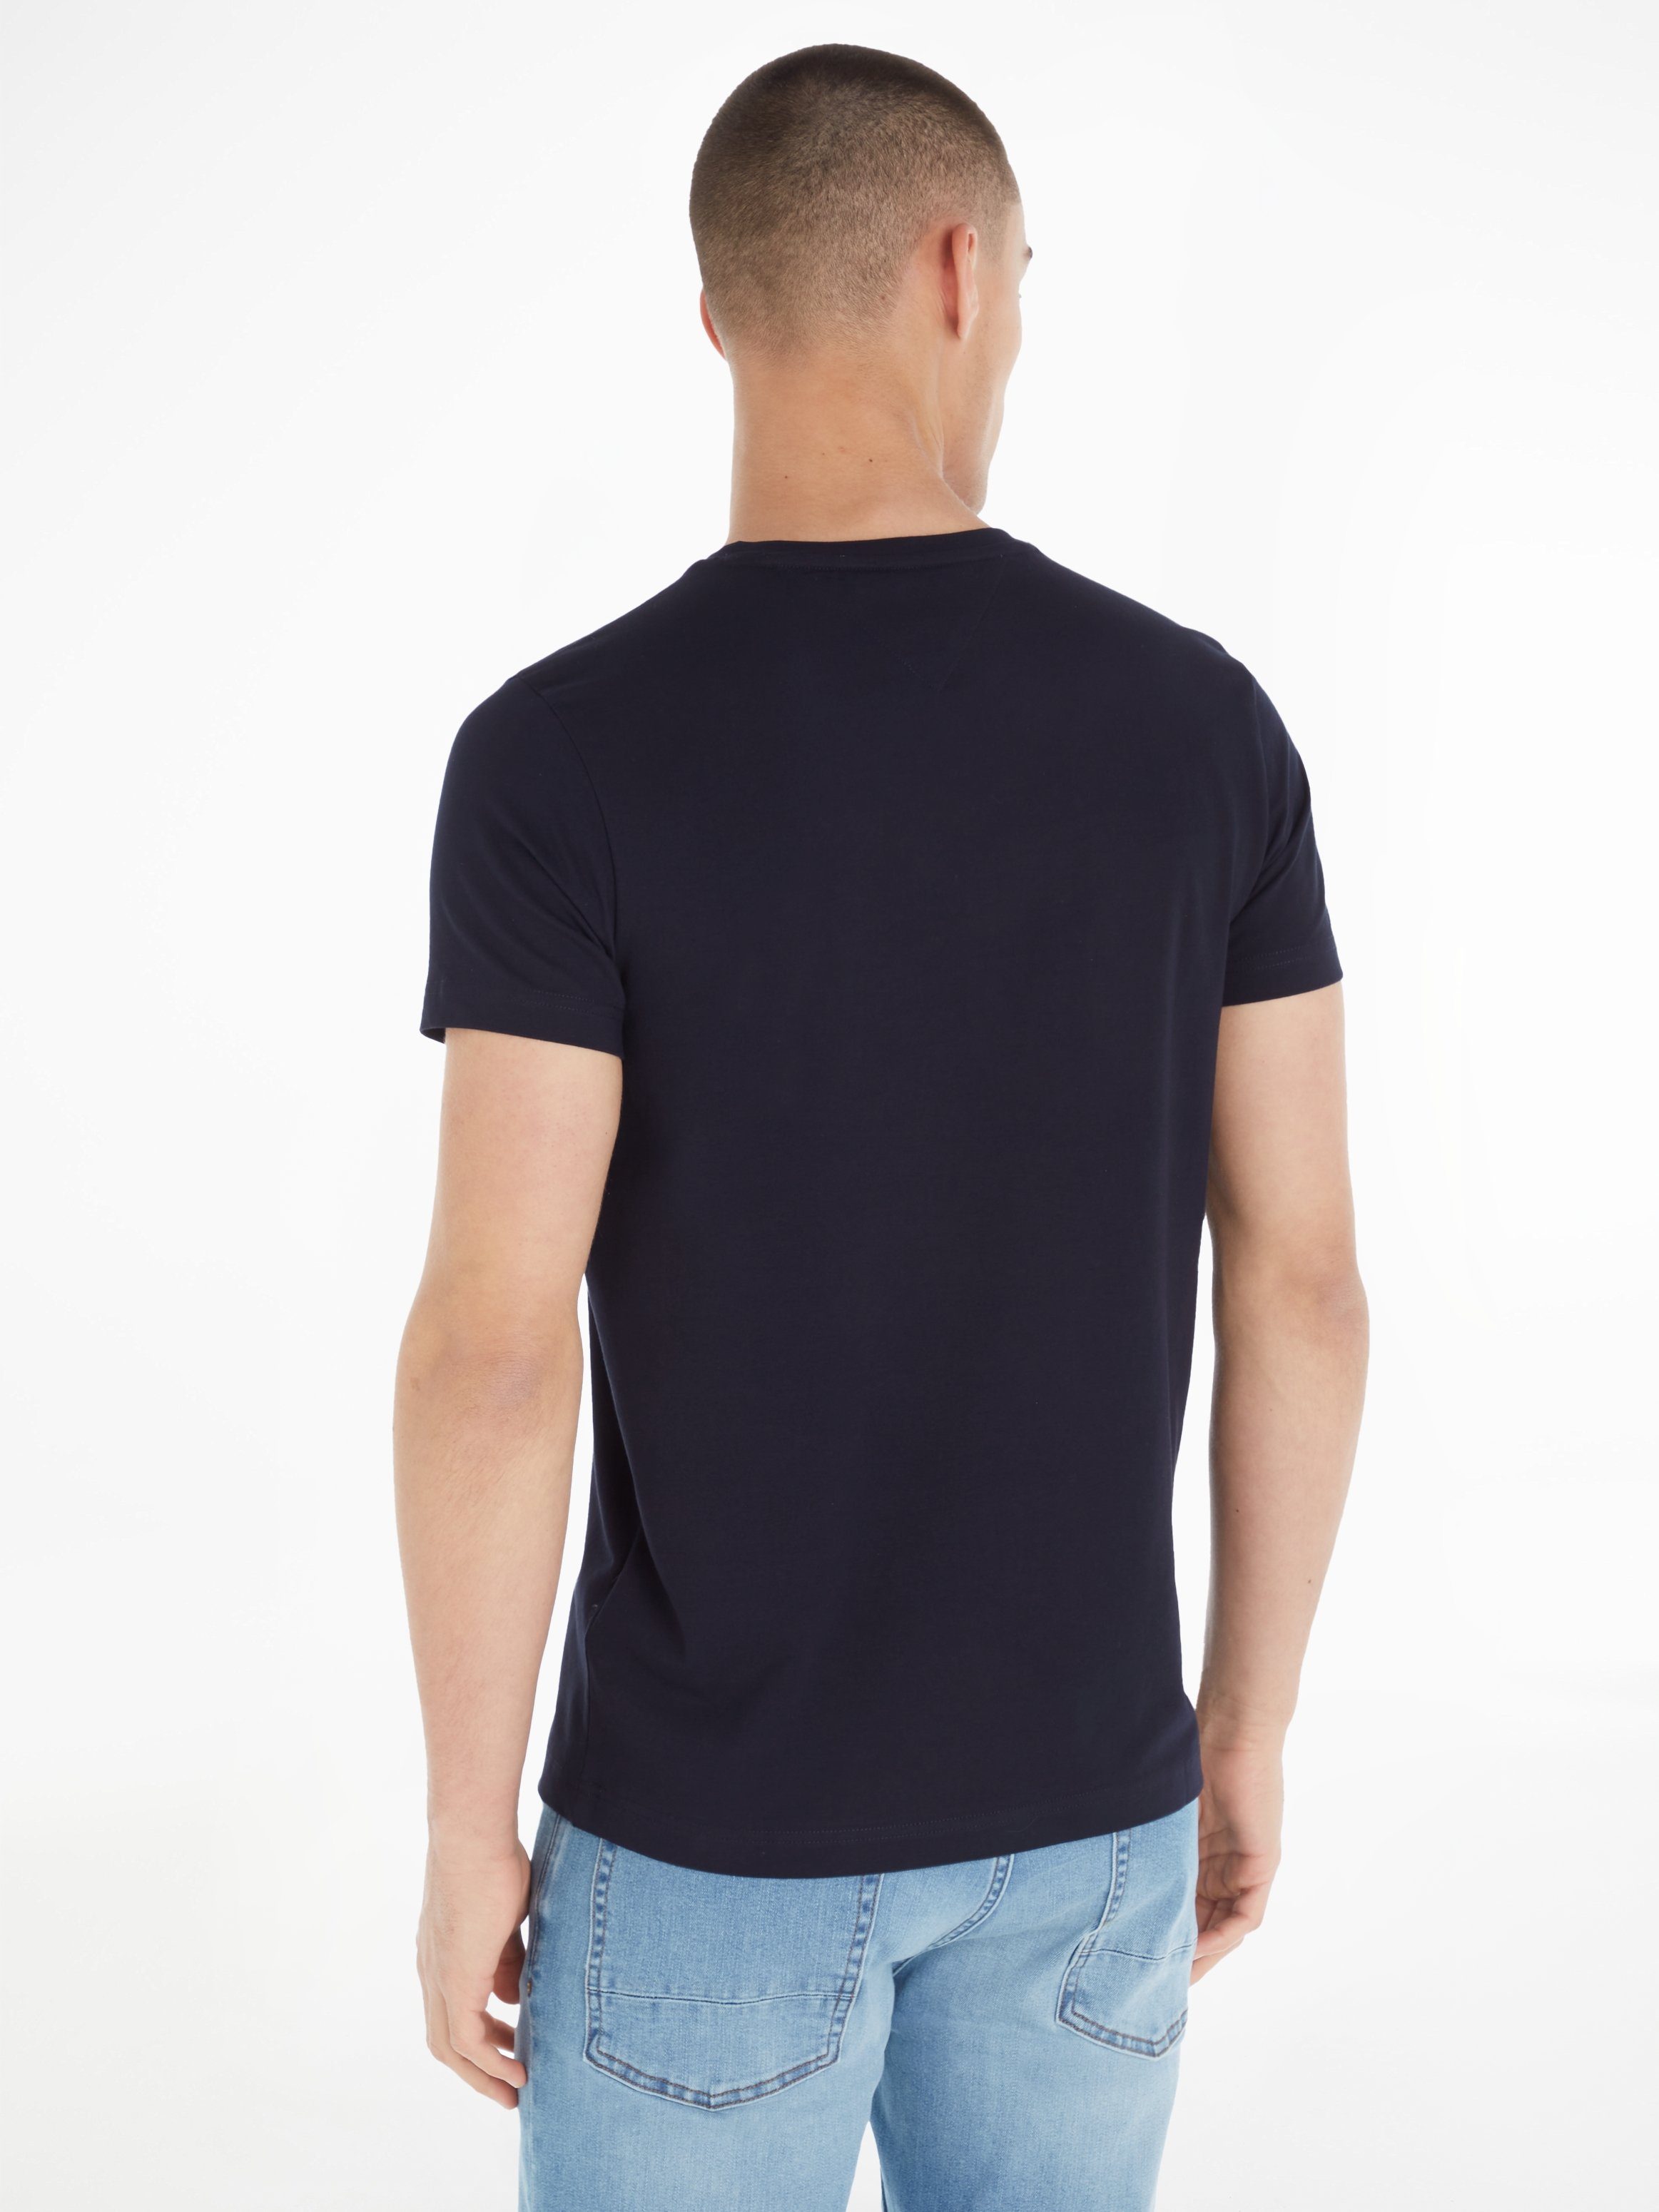 V-Shirt Tommy T-Shirt Hilfiger navy Stretch Slim